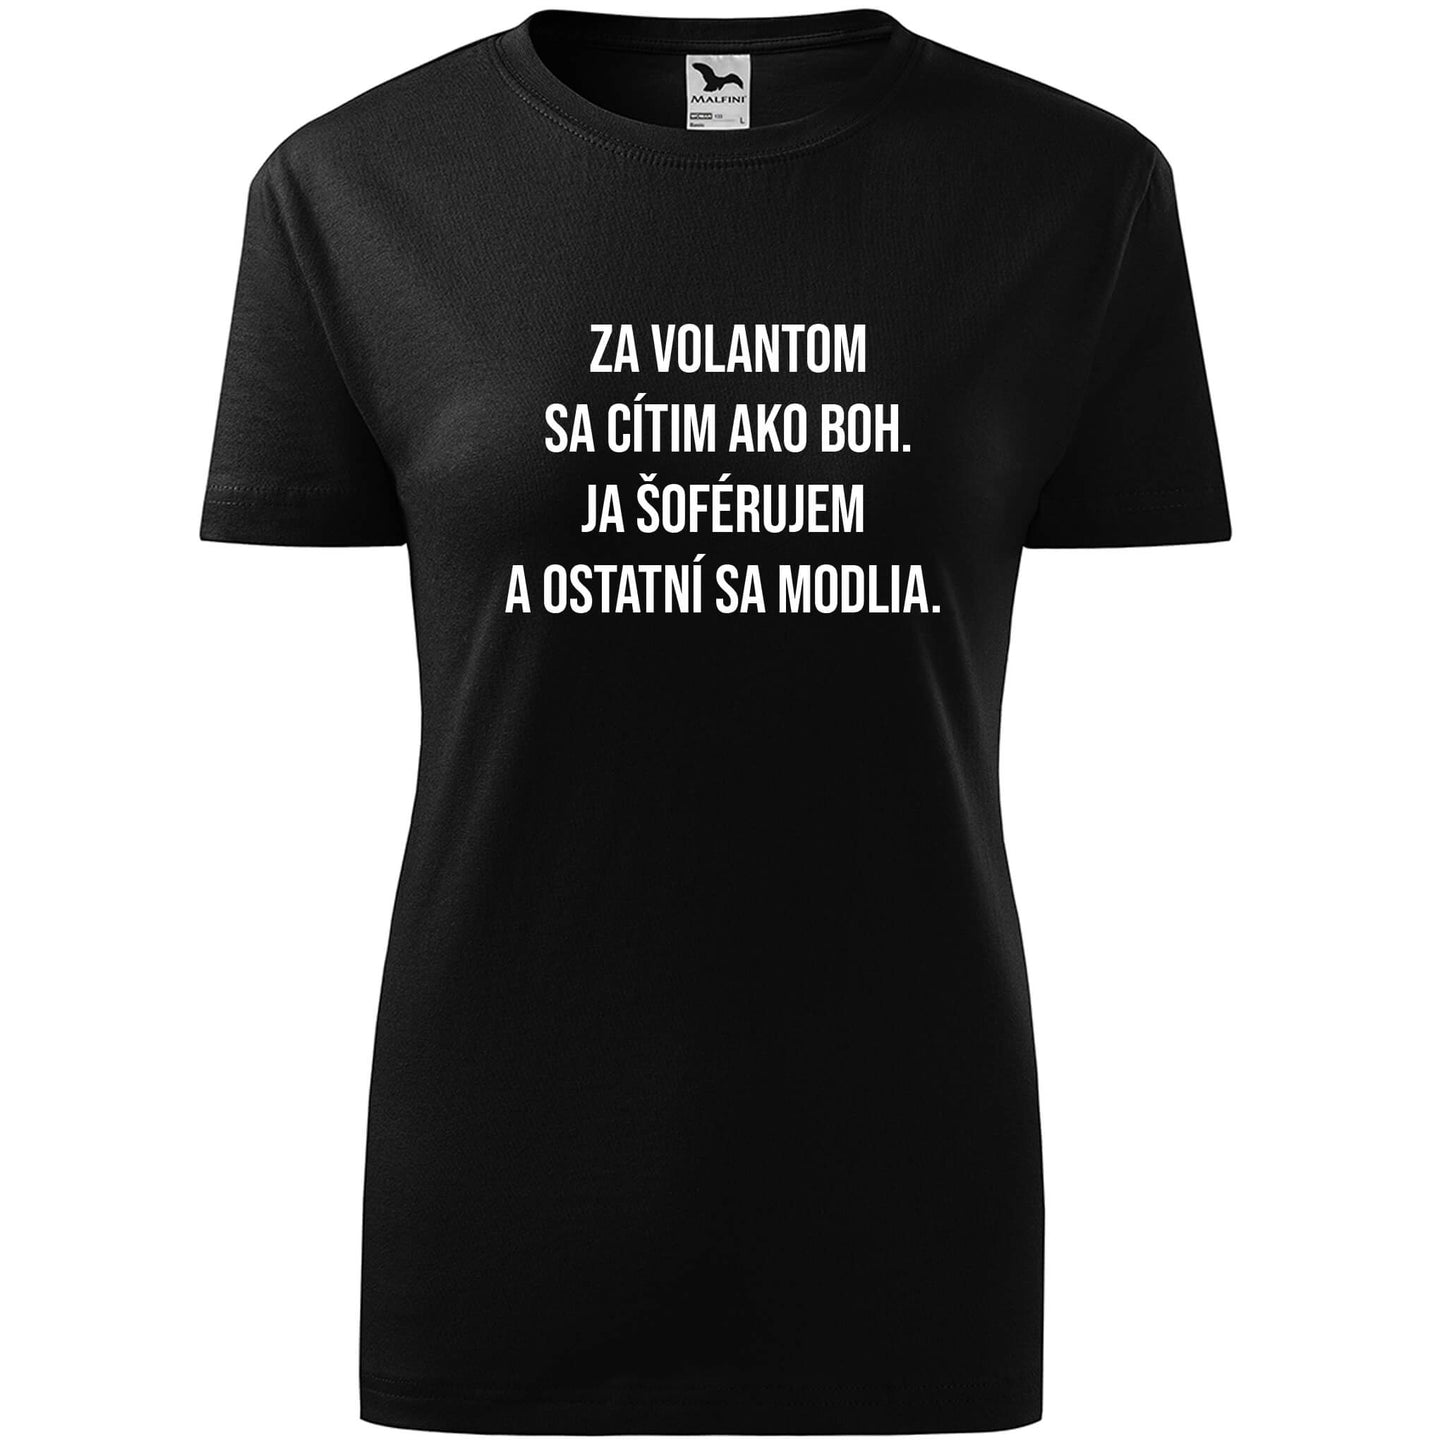 T-shirt - Za volantom sa cítim ako boh - rvdesignprint